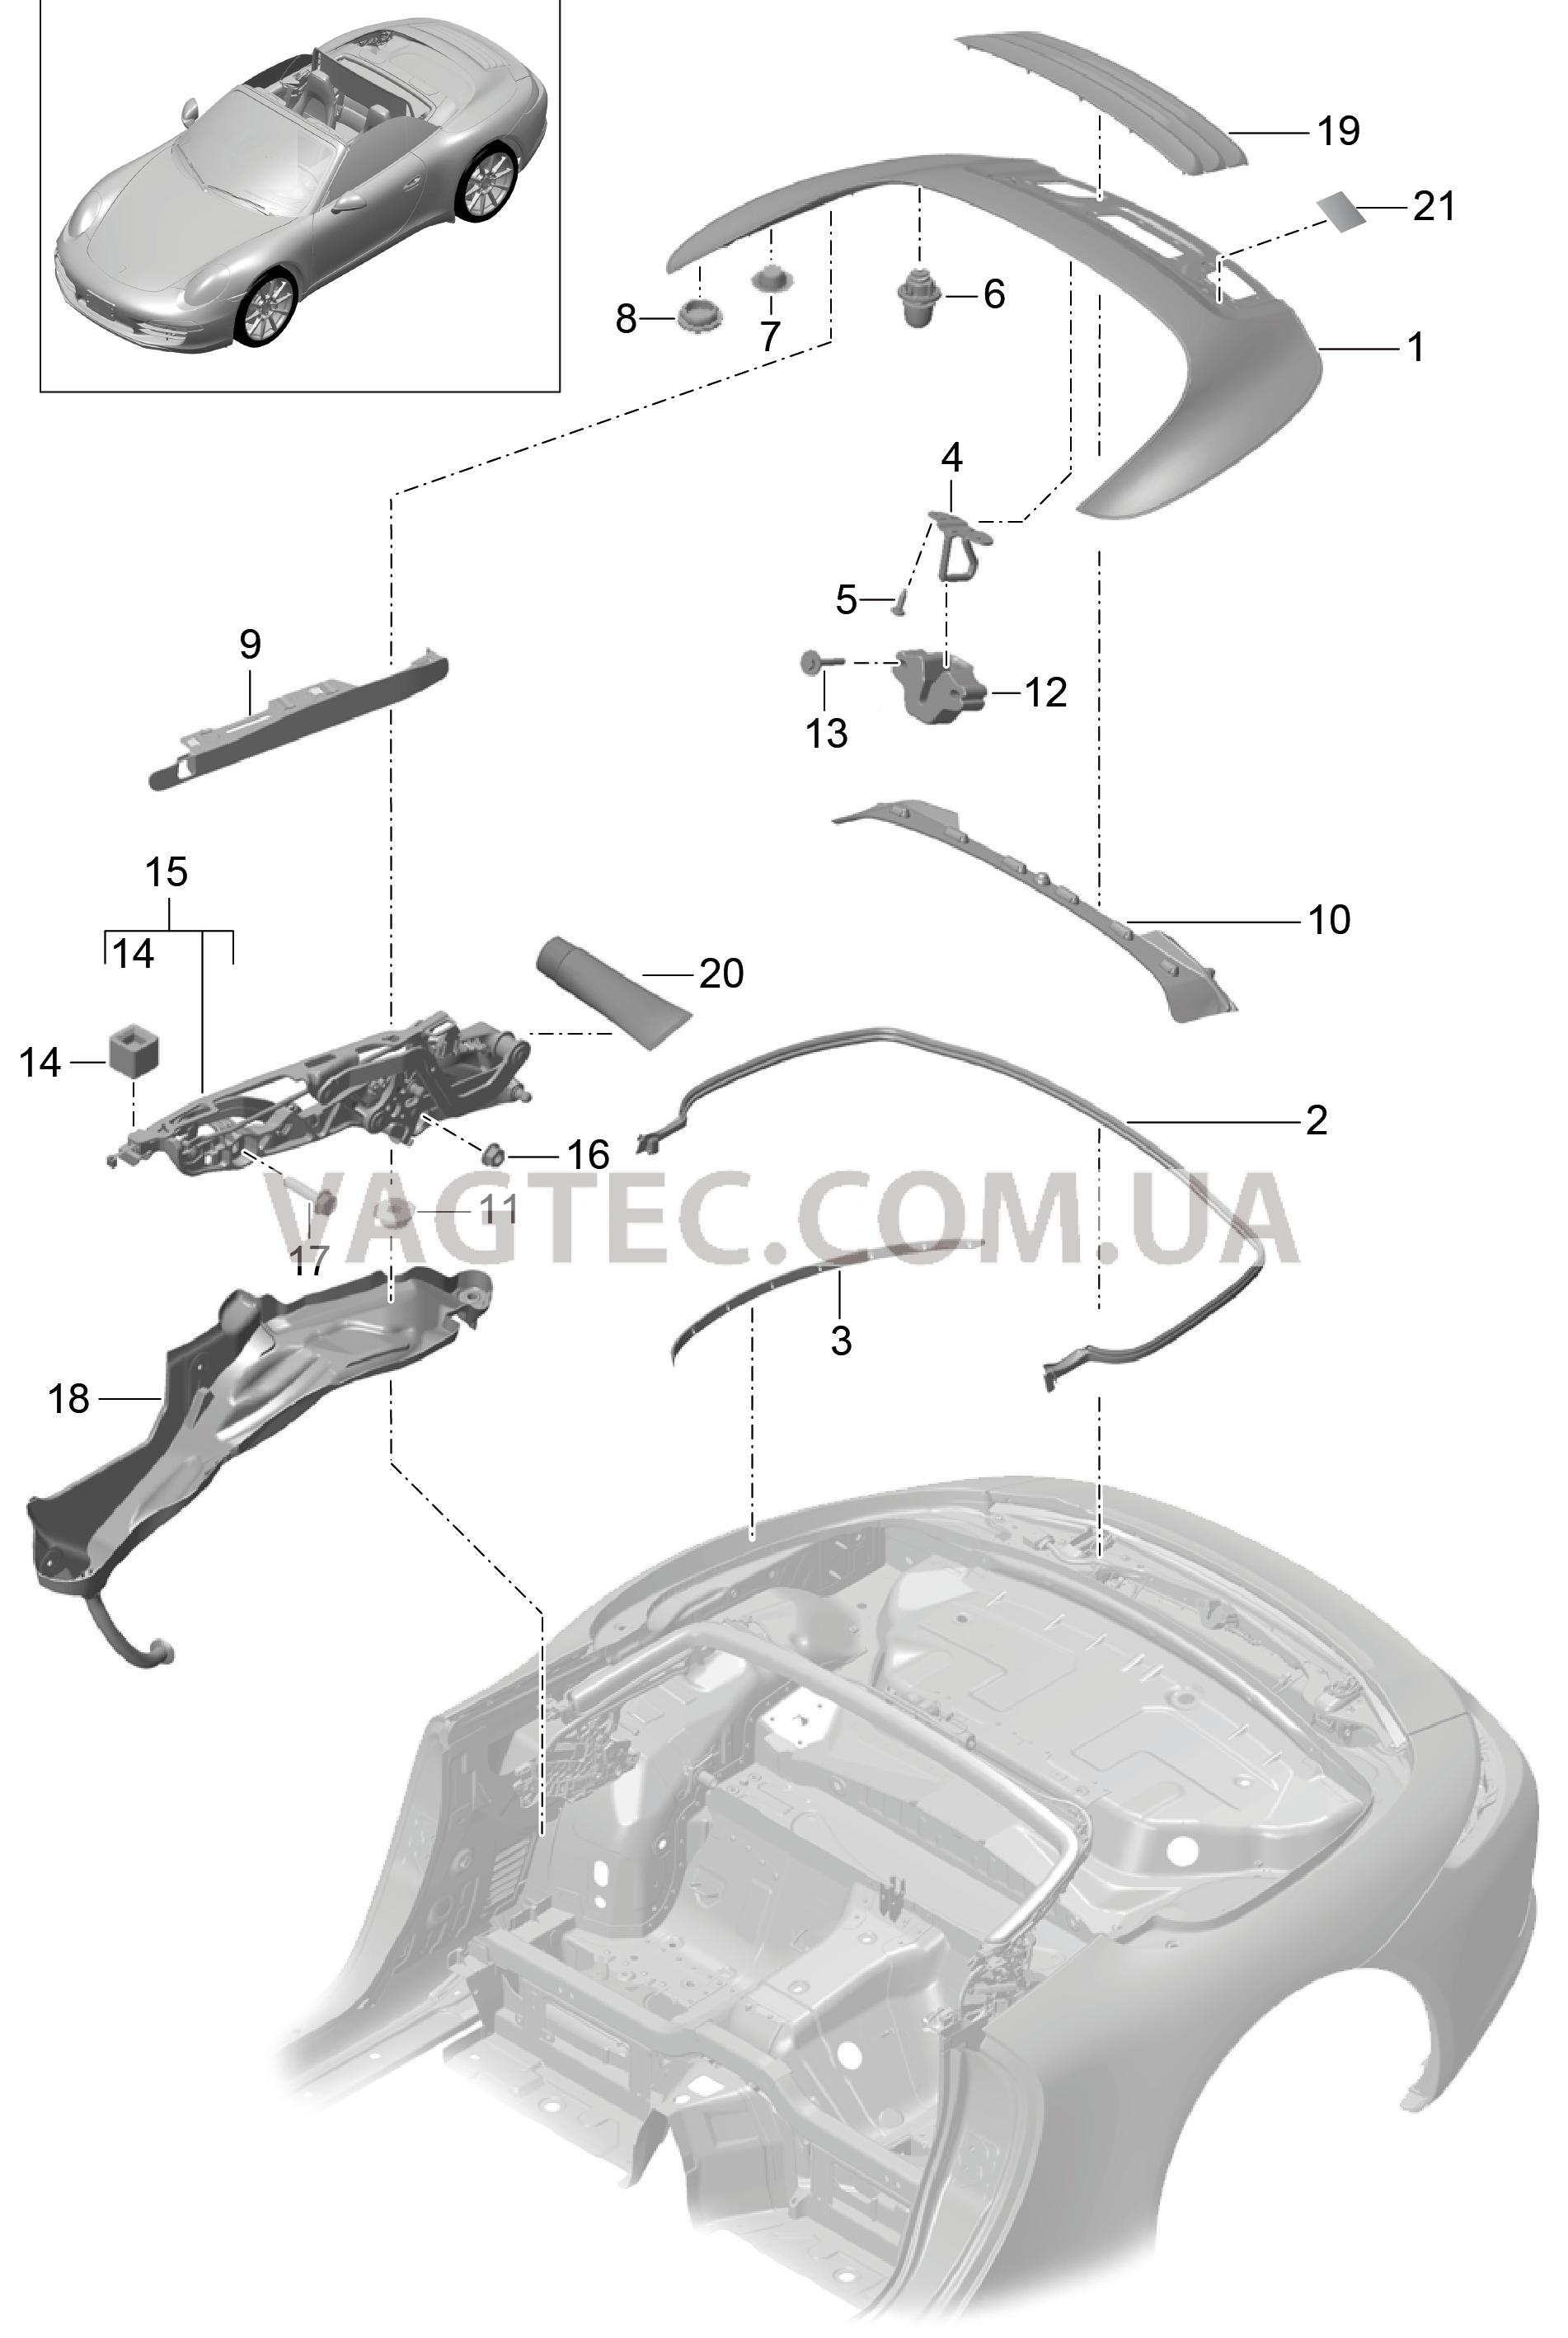 811-060 Отсек складного верха, Крышка
						
						CABRIO для PORSCHE 911.Carrera 2012-2016USA